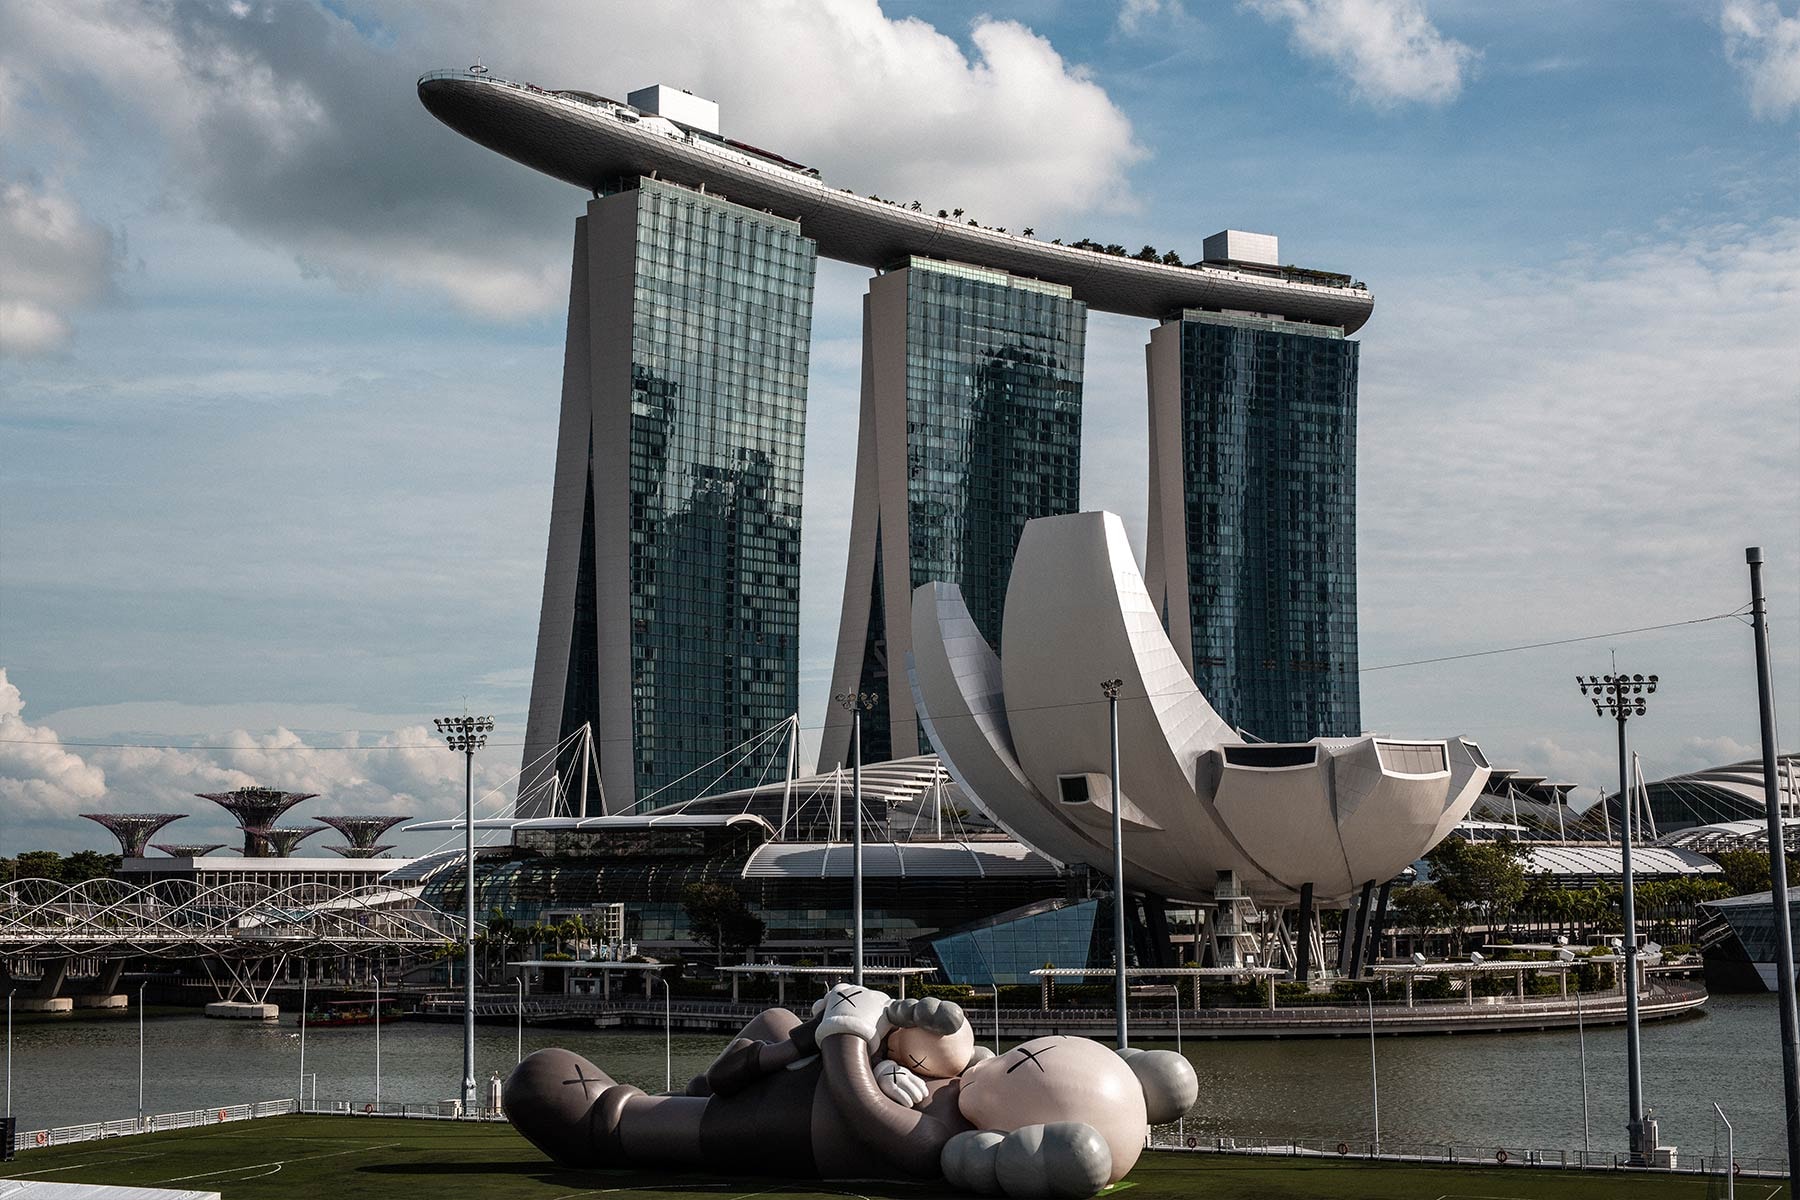 シンガポール・マリーナベイに上陸した“カウズ:ホリデイ”が裁判所から展示中止を命じられる KAWS:HOLIDAY Singapore Ordered To Stop The Ryan Foundation Court Order Info AllRightsReserved 